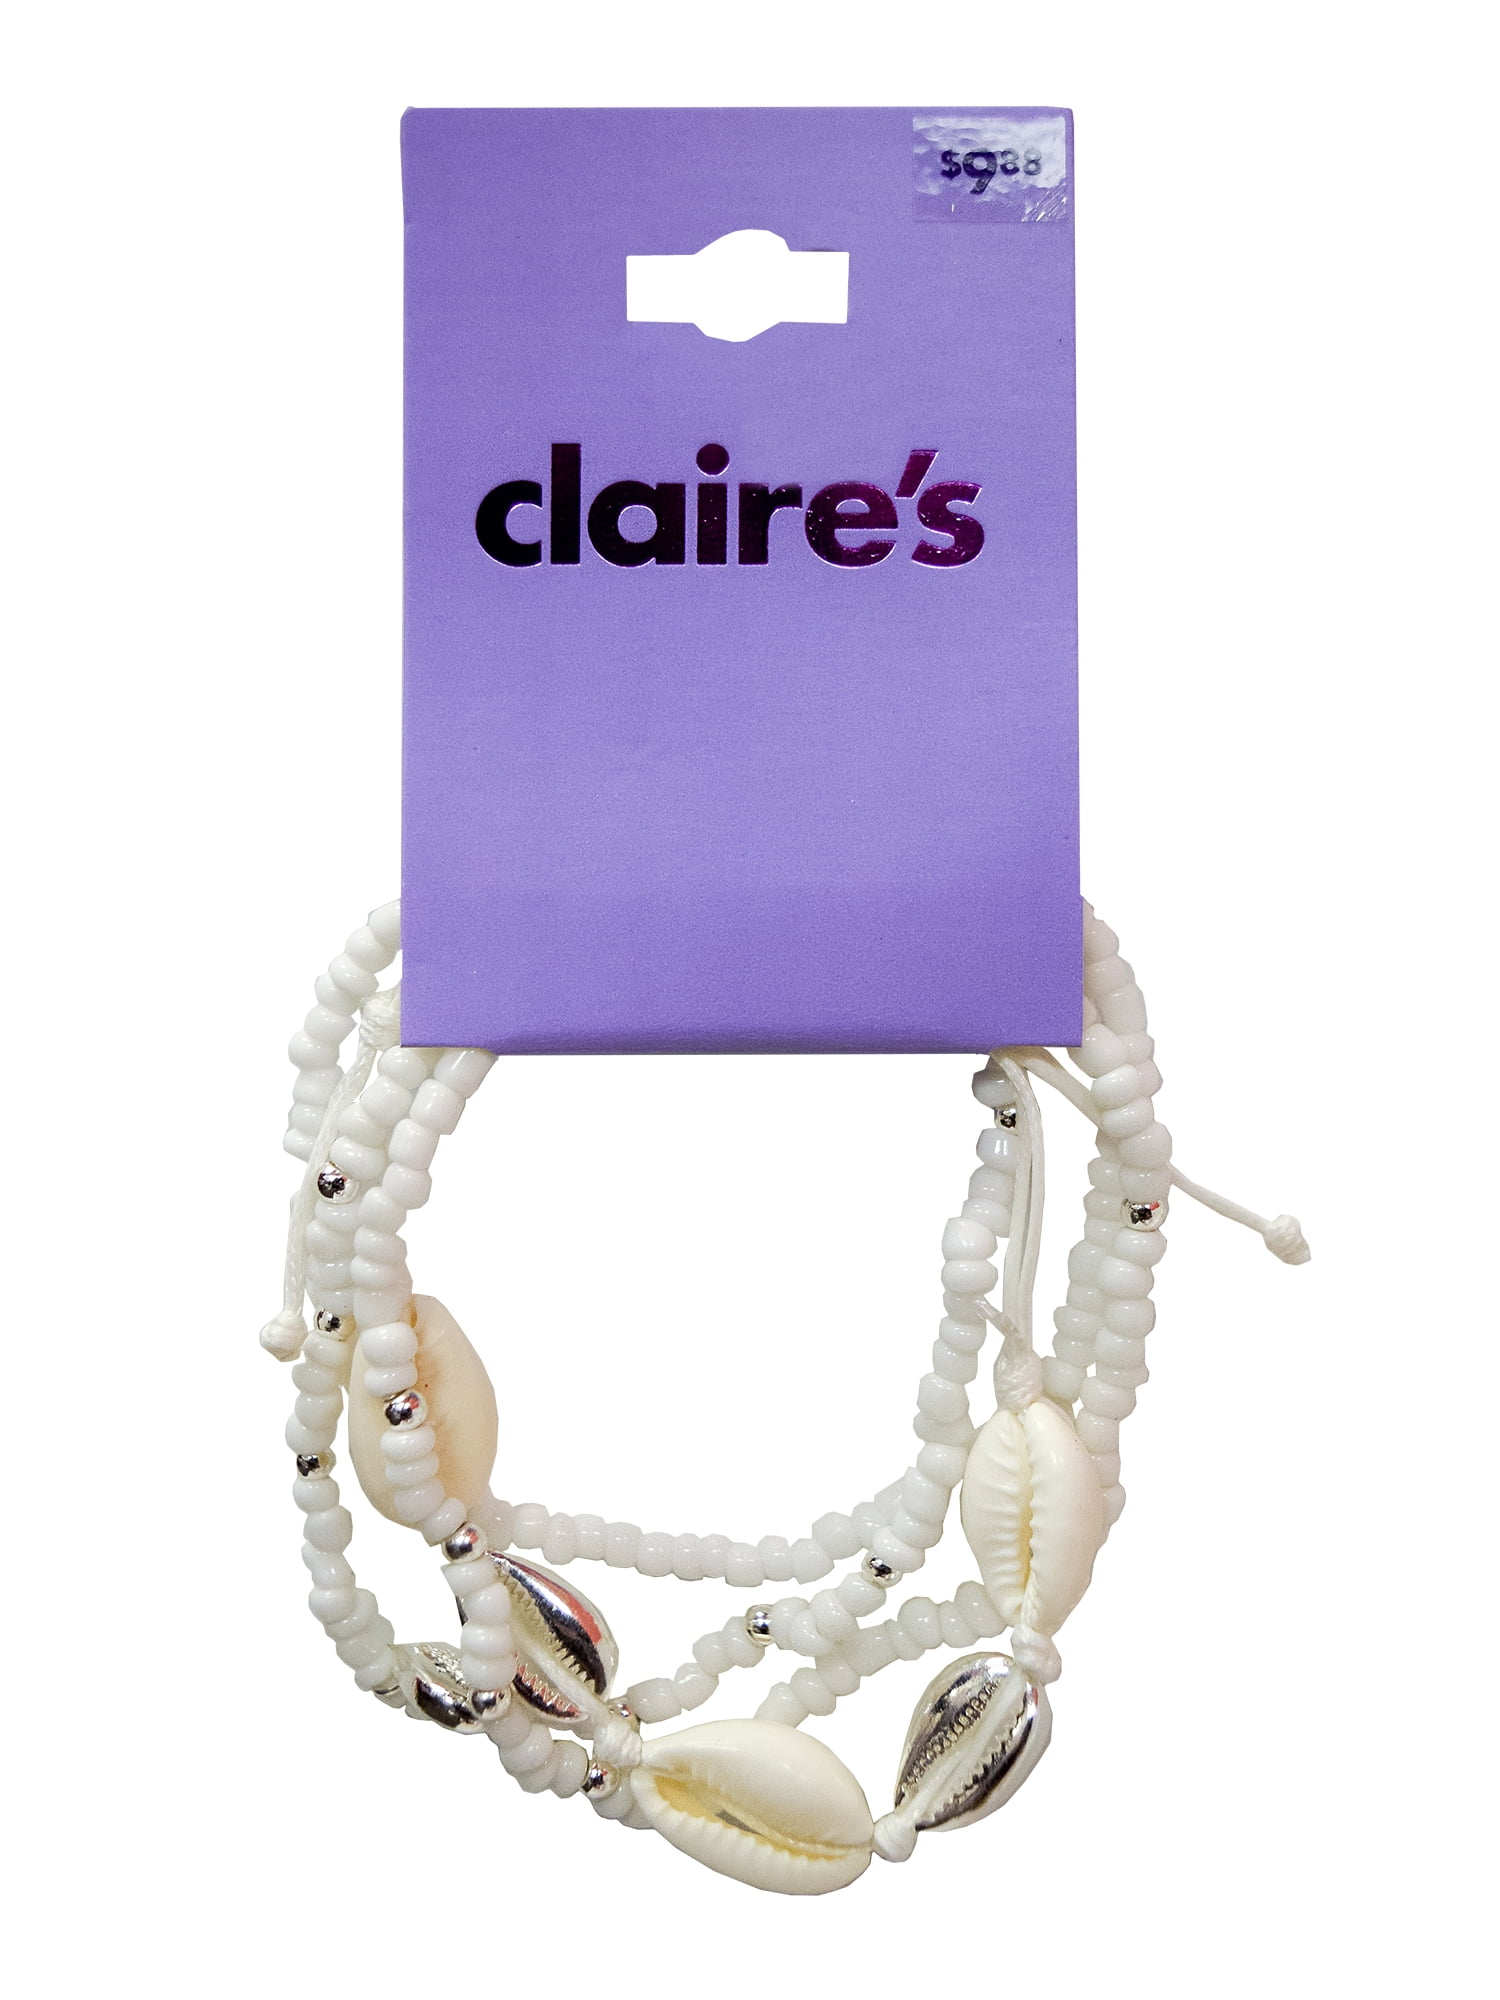 Jewel Tone Adjustable Friendship Bracelets - 5 Pack | Claire's